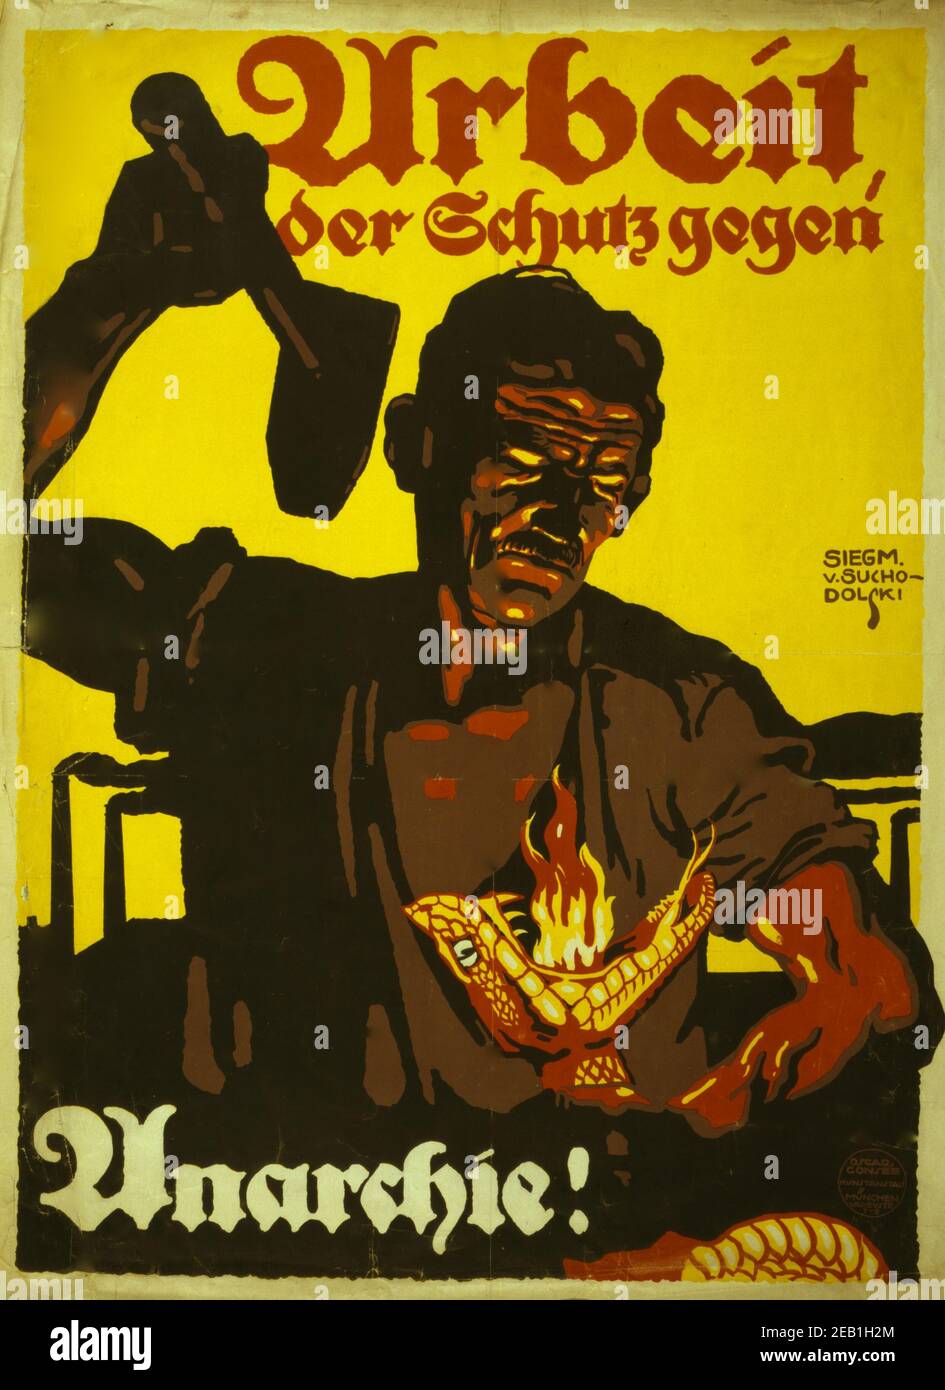 Arbeit, der Schutz gegen Anarchie!; Work, the protection against anarchy. 1919 Stock Photo